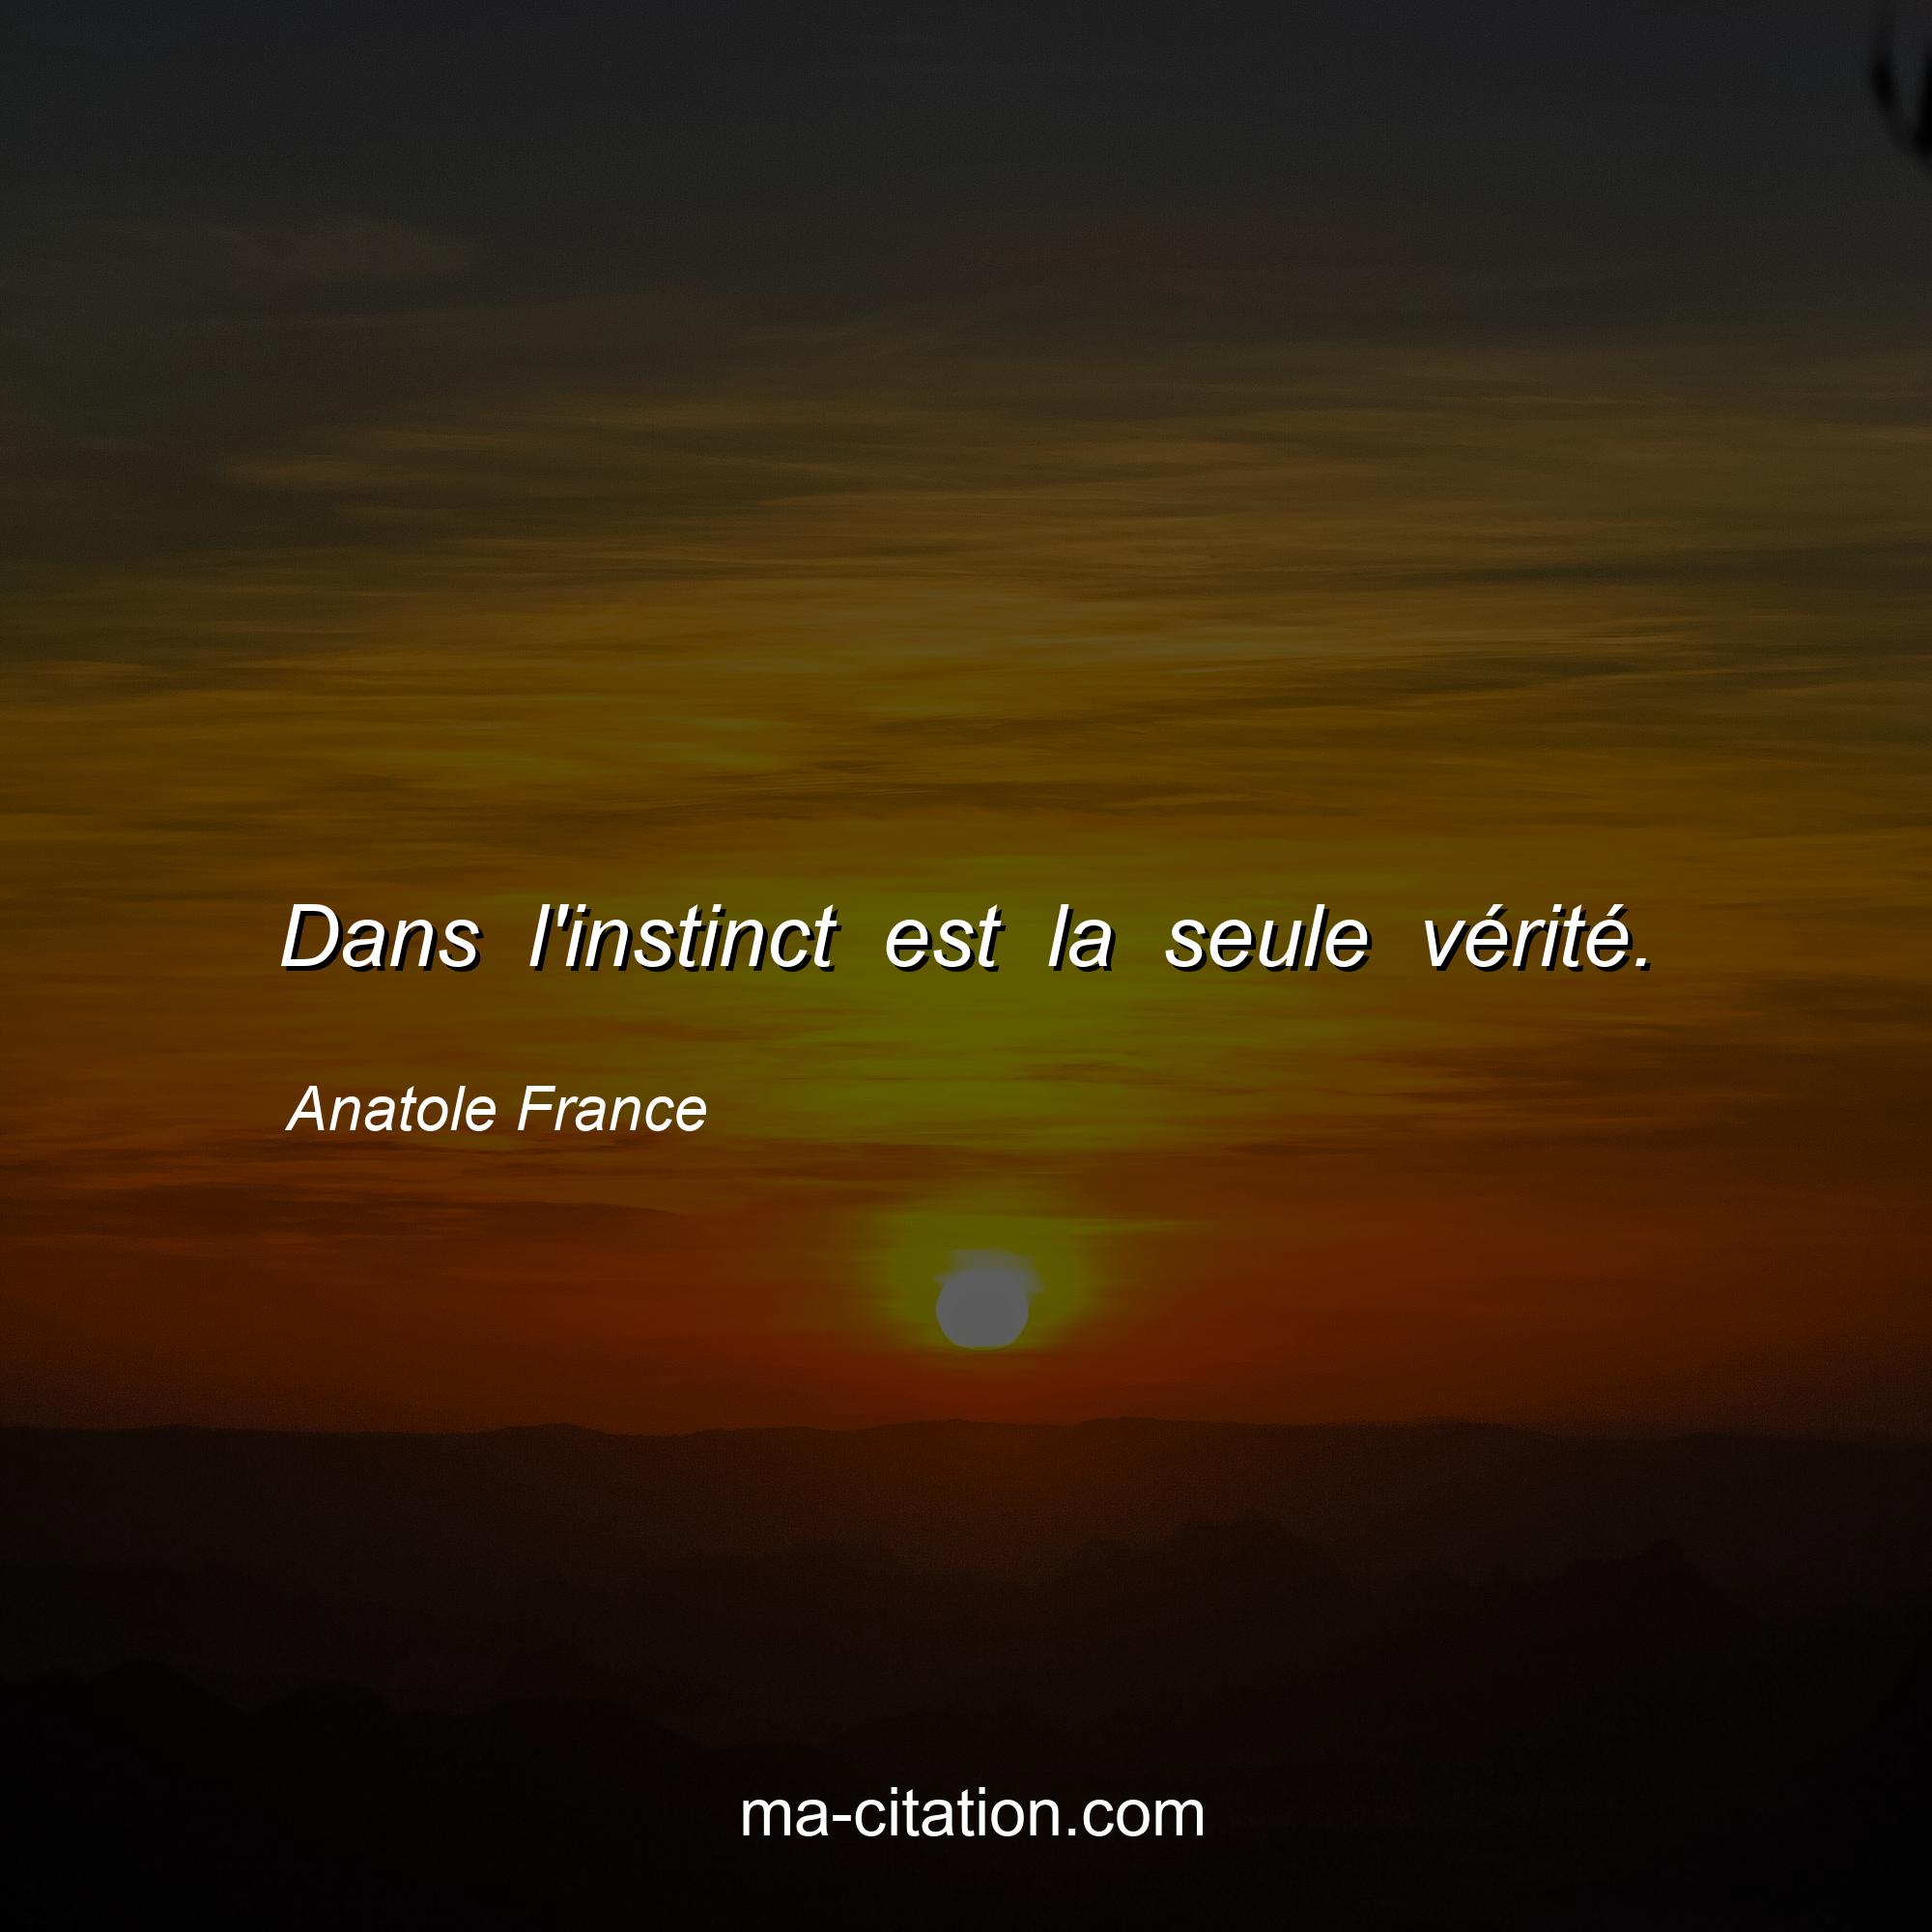 Anatole France : Dans l'instinct est la seule vérité.